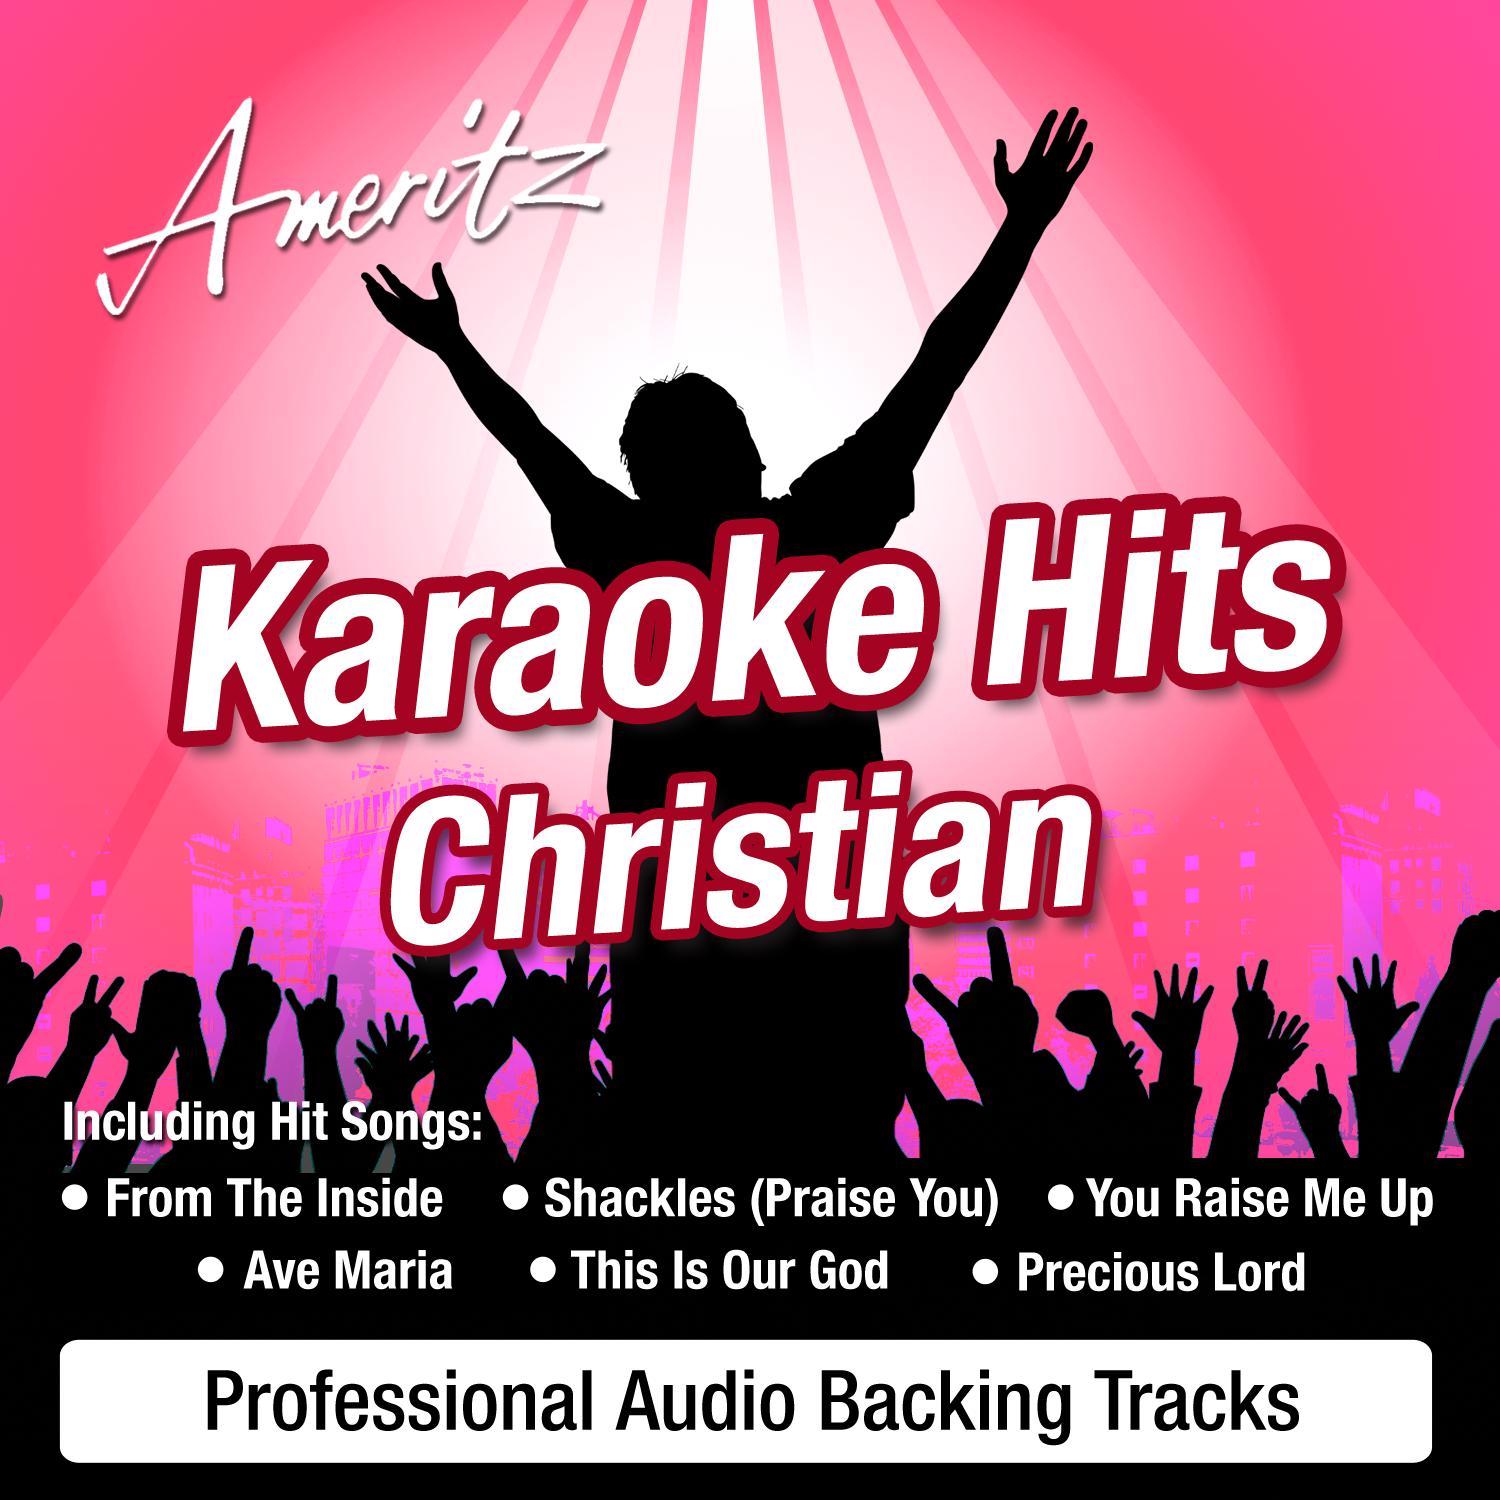 Karaoke Hits - Christian